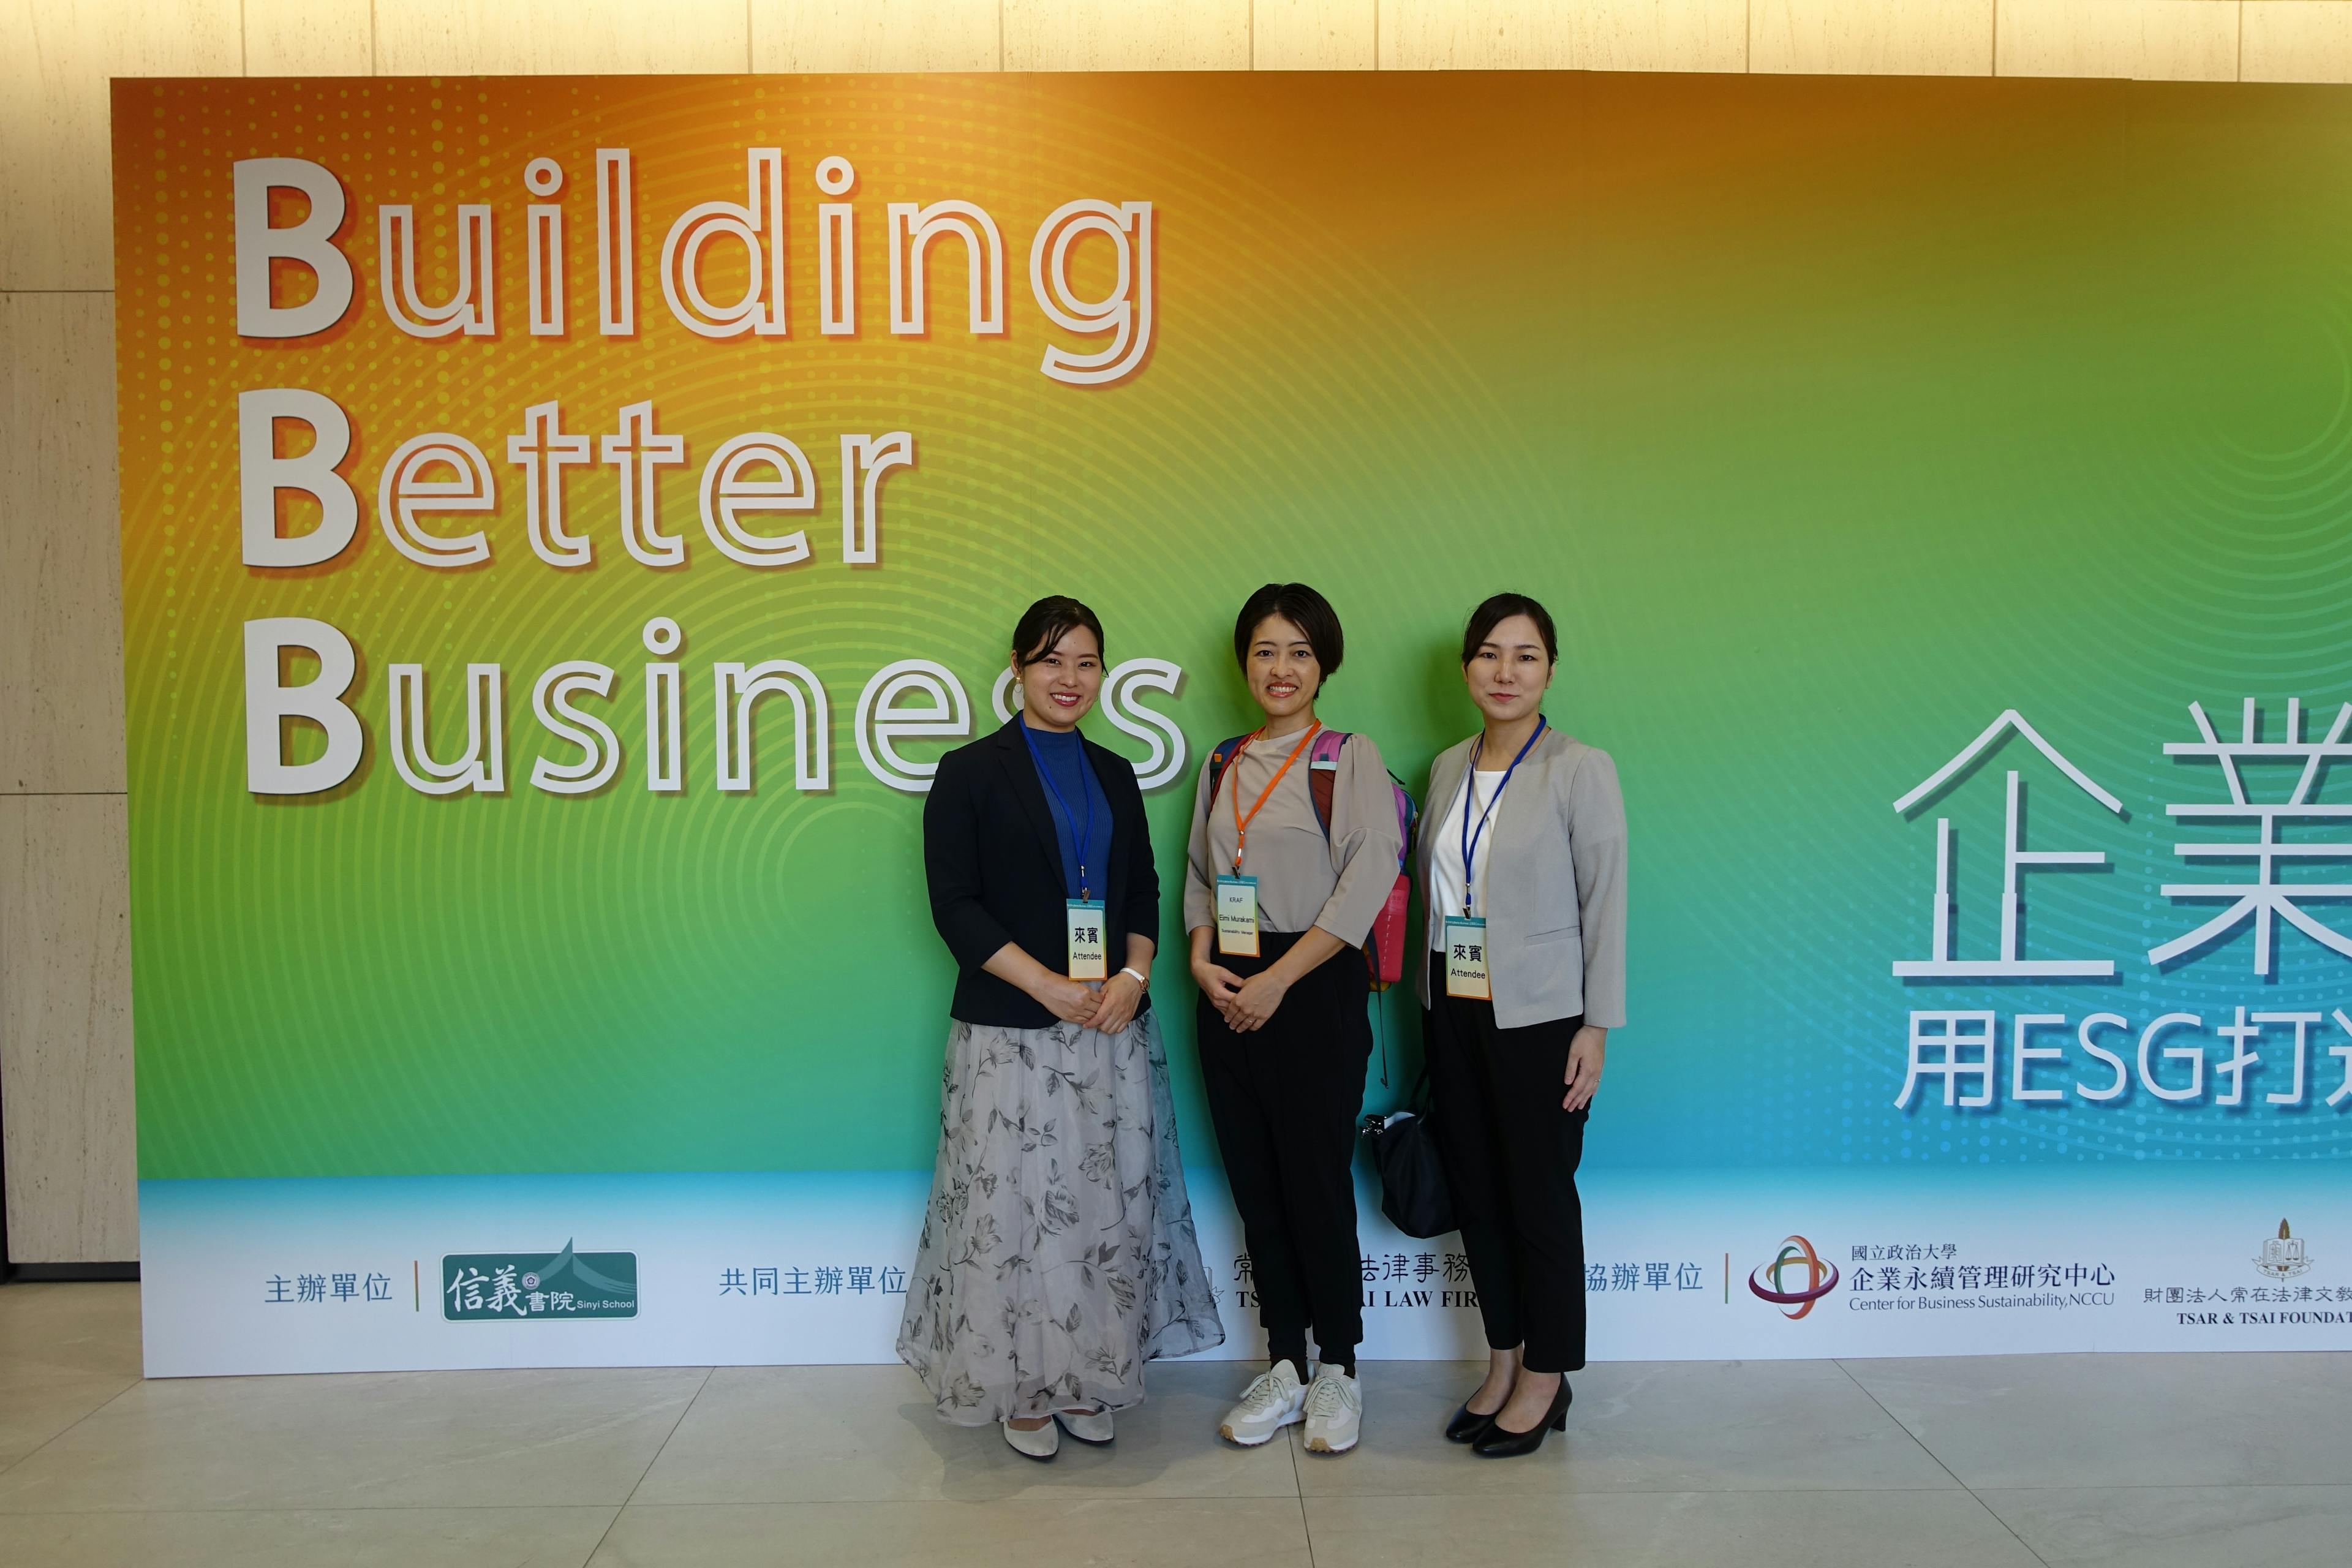 台湾開催”Better Business Forum”で登壇しました